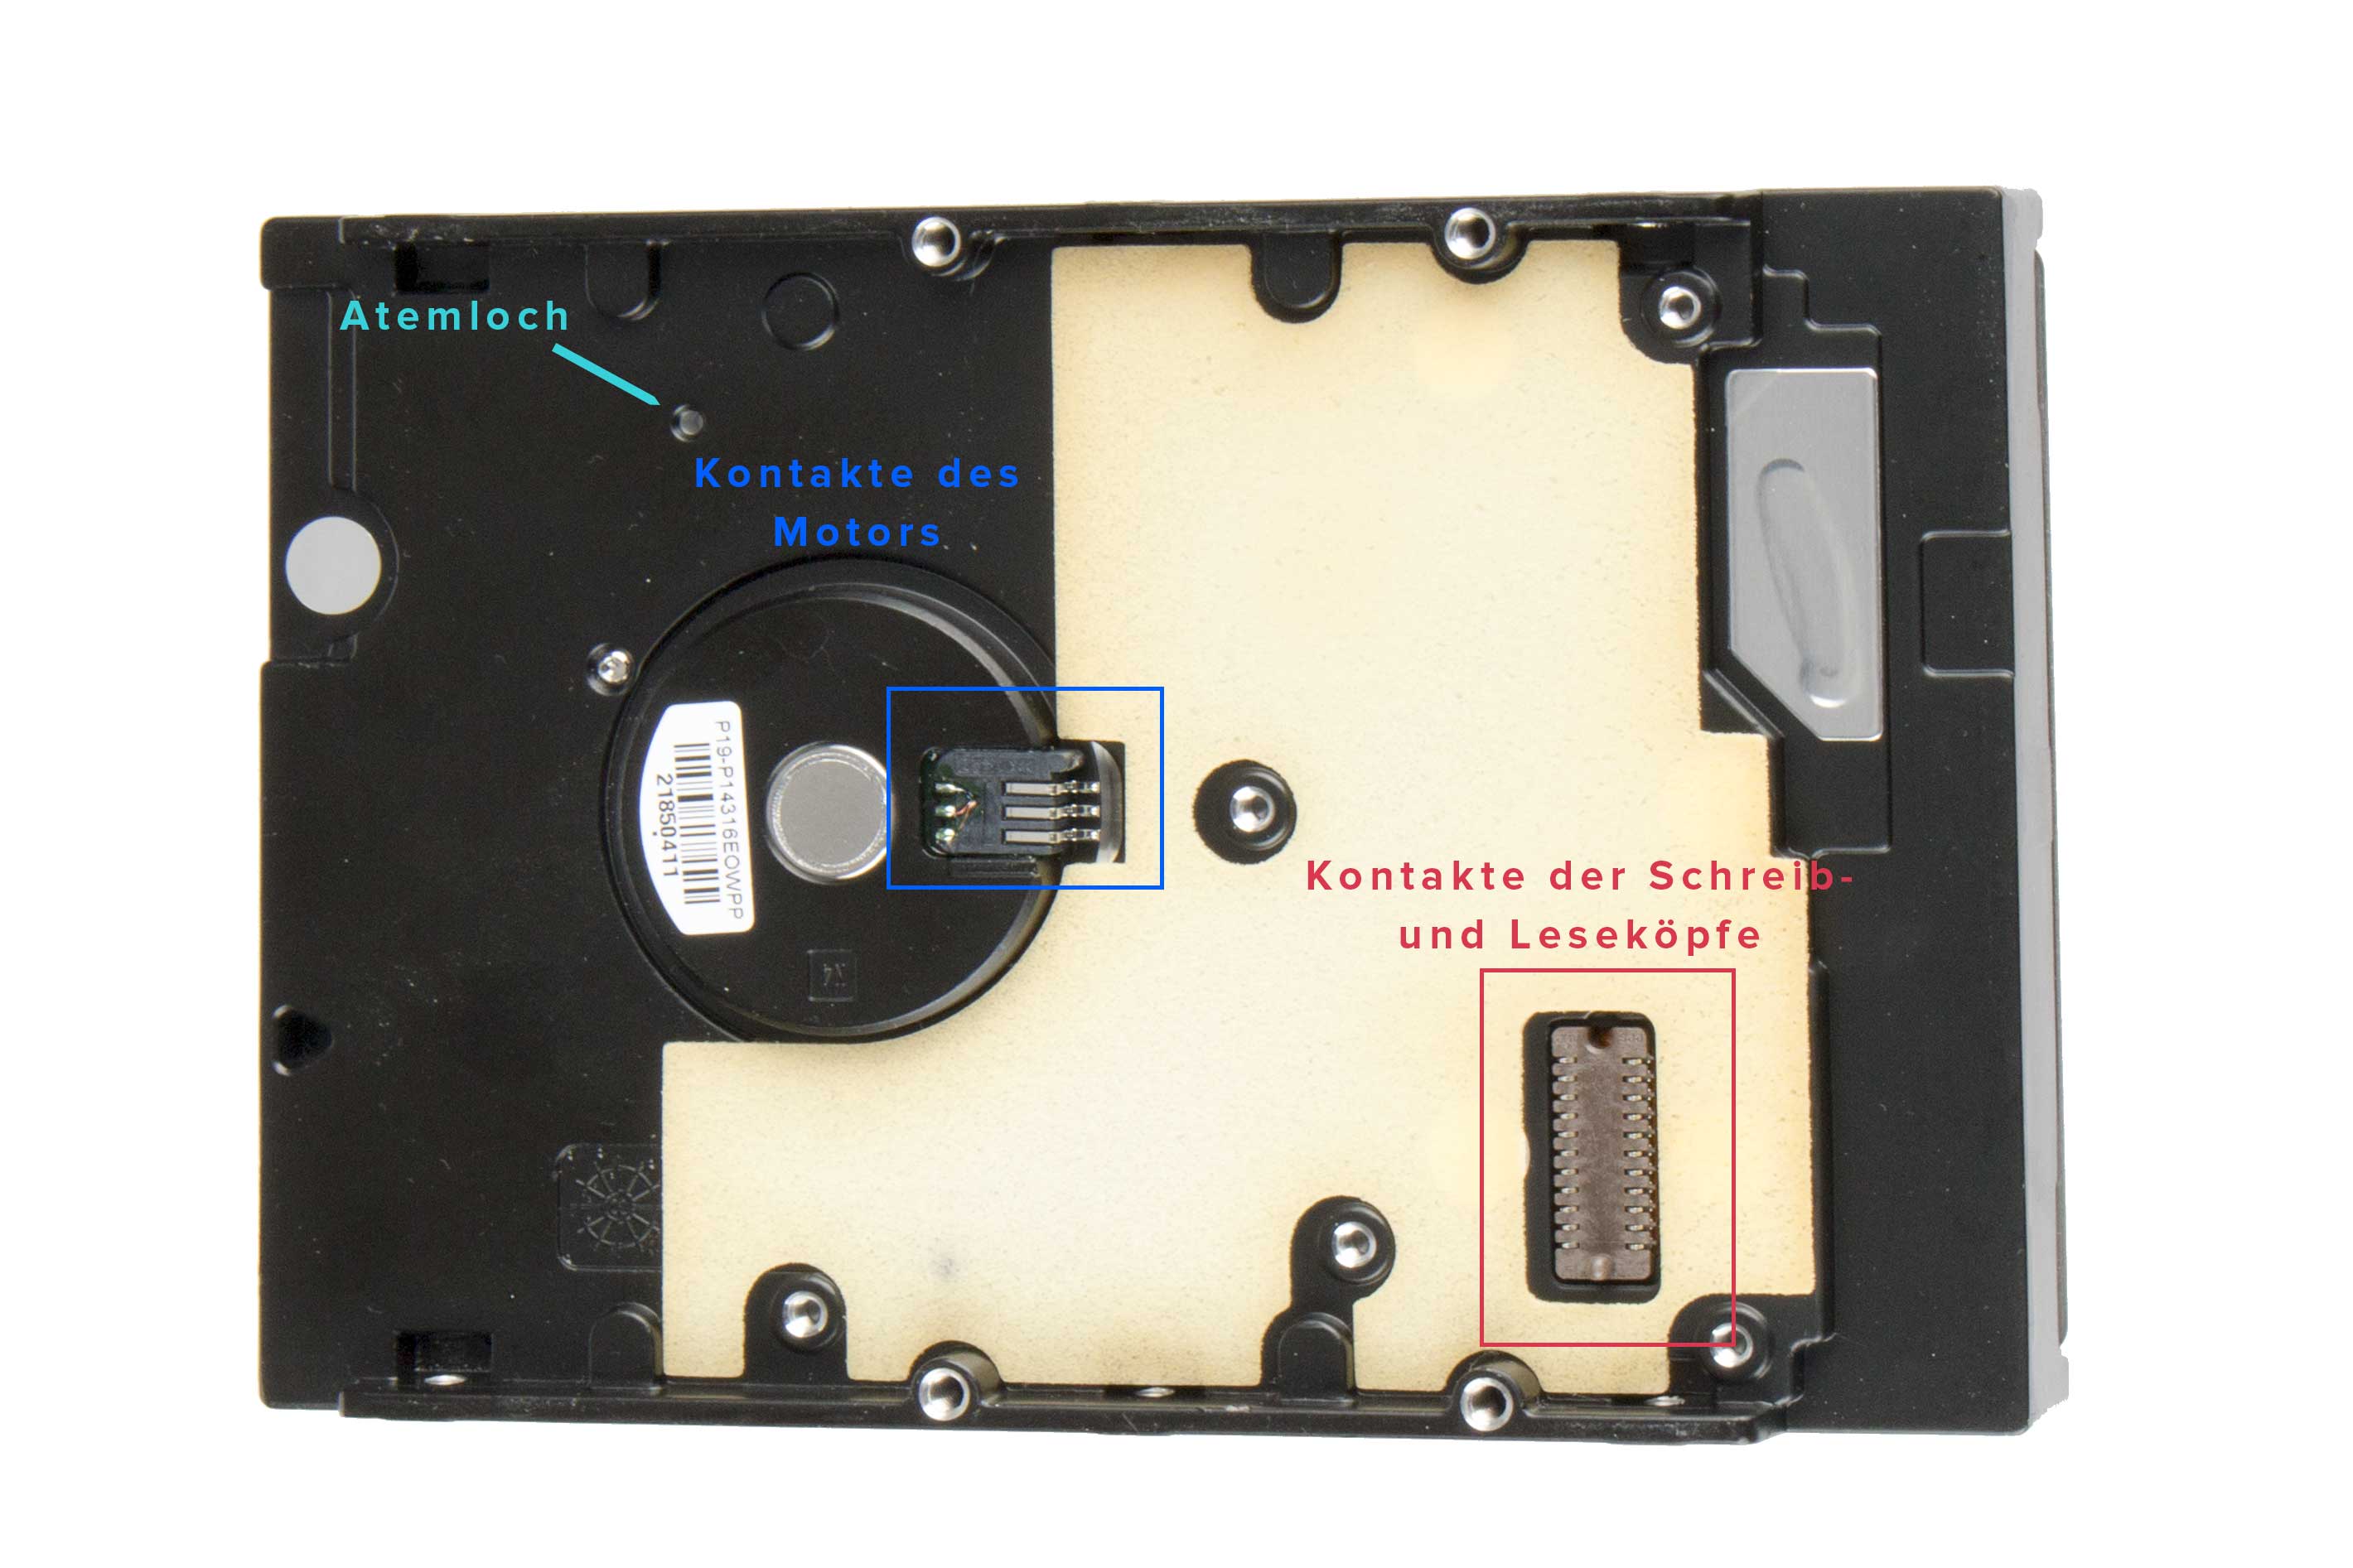 Computer festplatte hdd datenspeicherlaufwerk ohne abschirmabdeckung zeigen magnetische  platte und elektronische schaltung im inneren